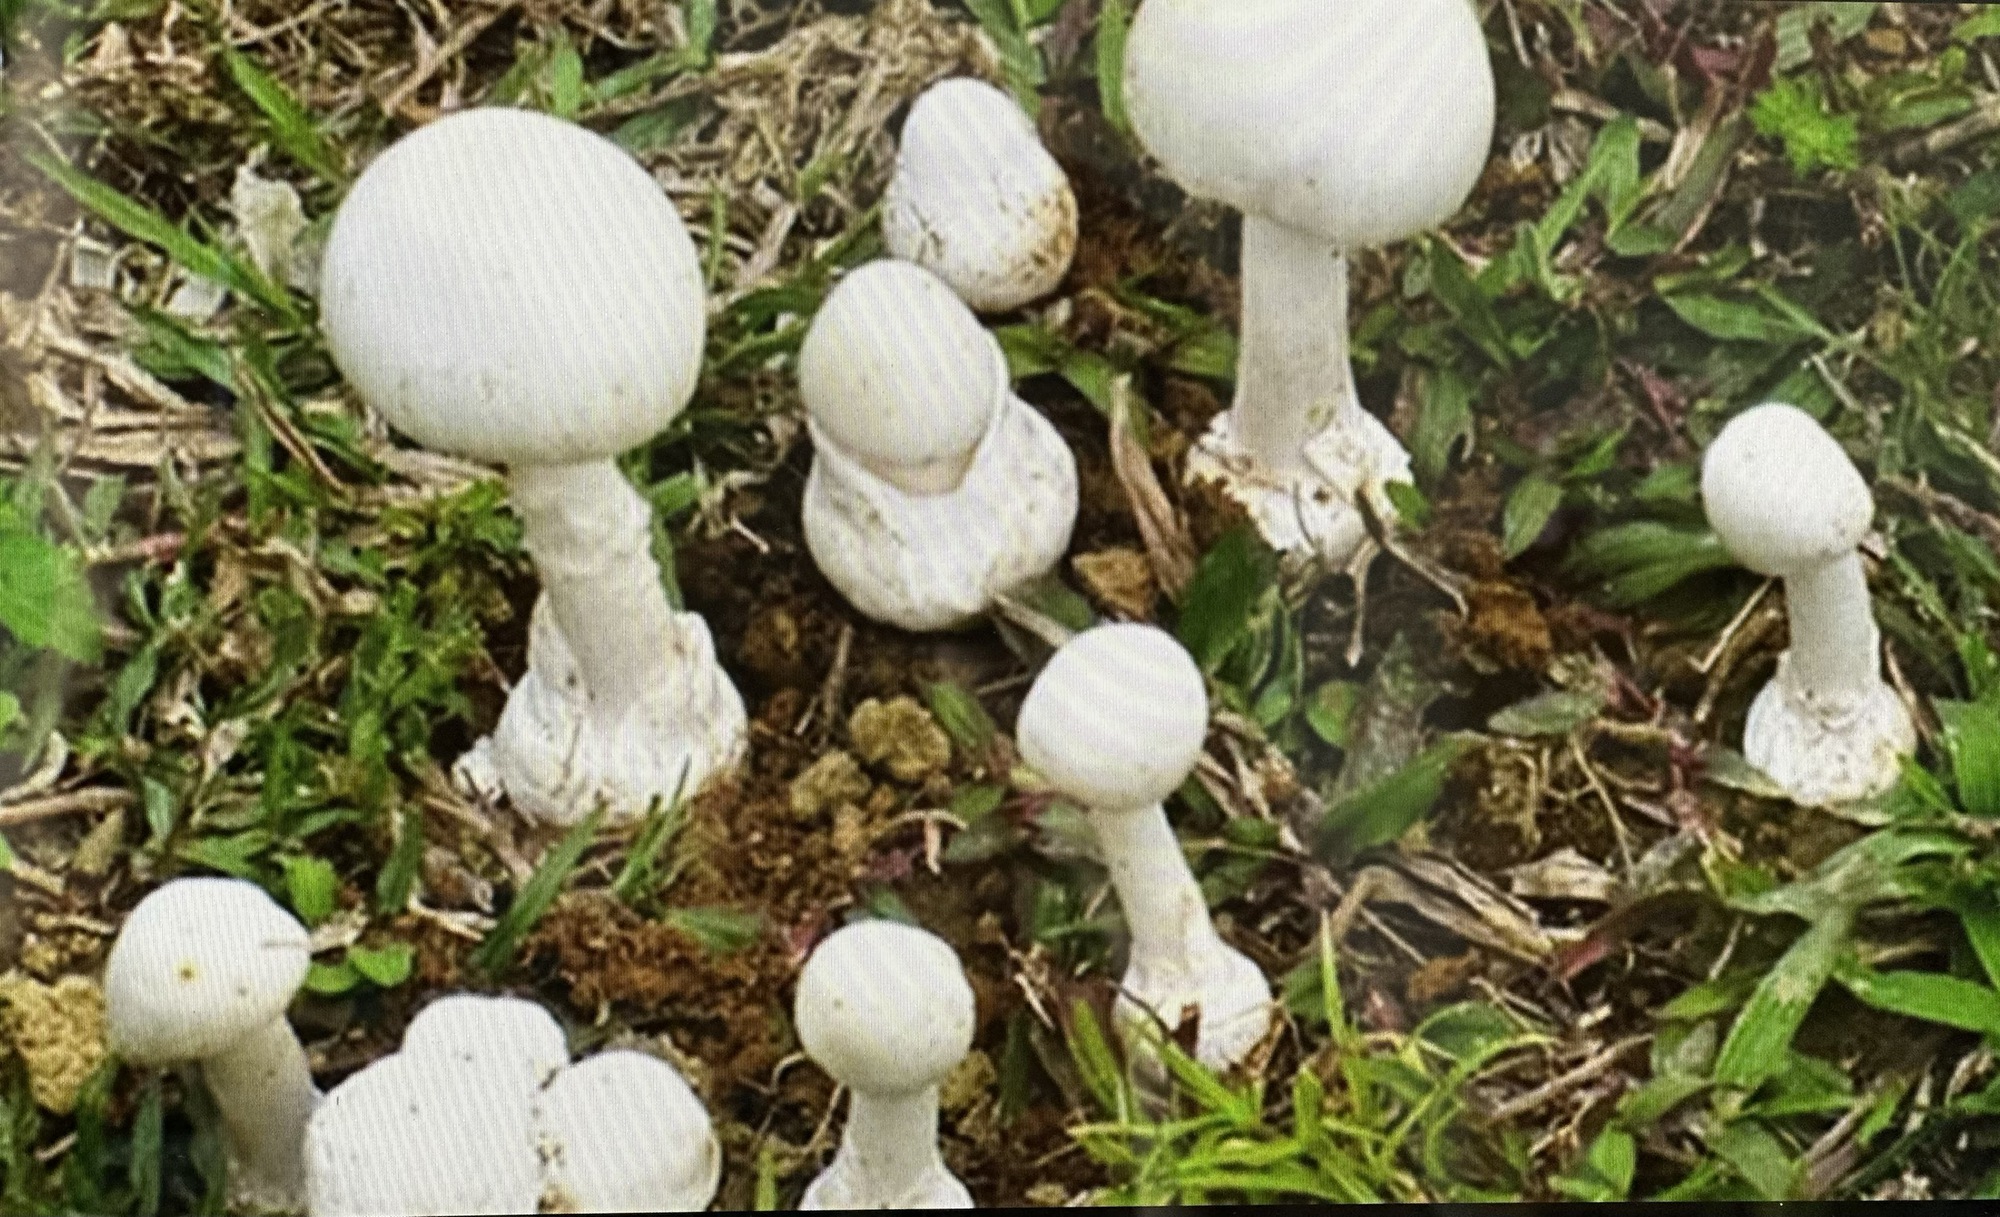 Cảnh giác với loại nấm mọc hoang trong vườn dễ lầm tưởng là nấm rơm - Ảnh 3